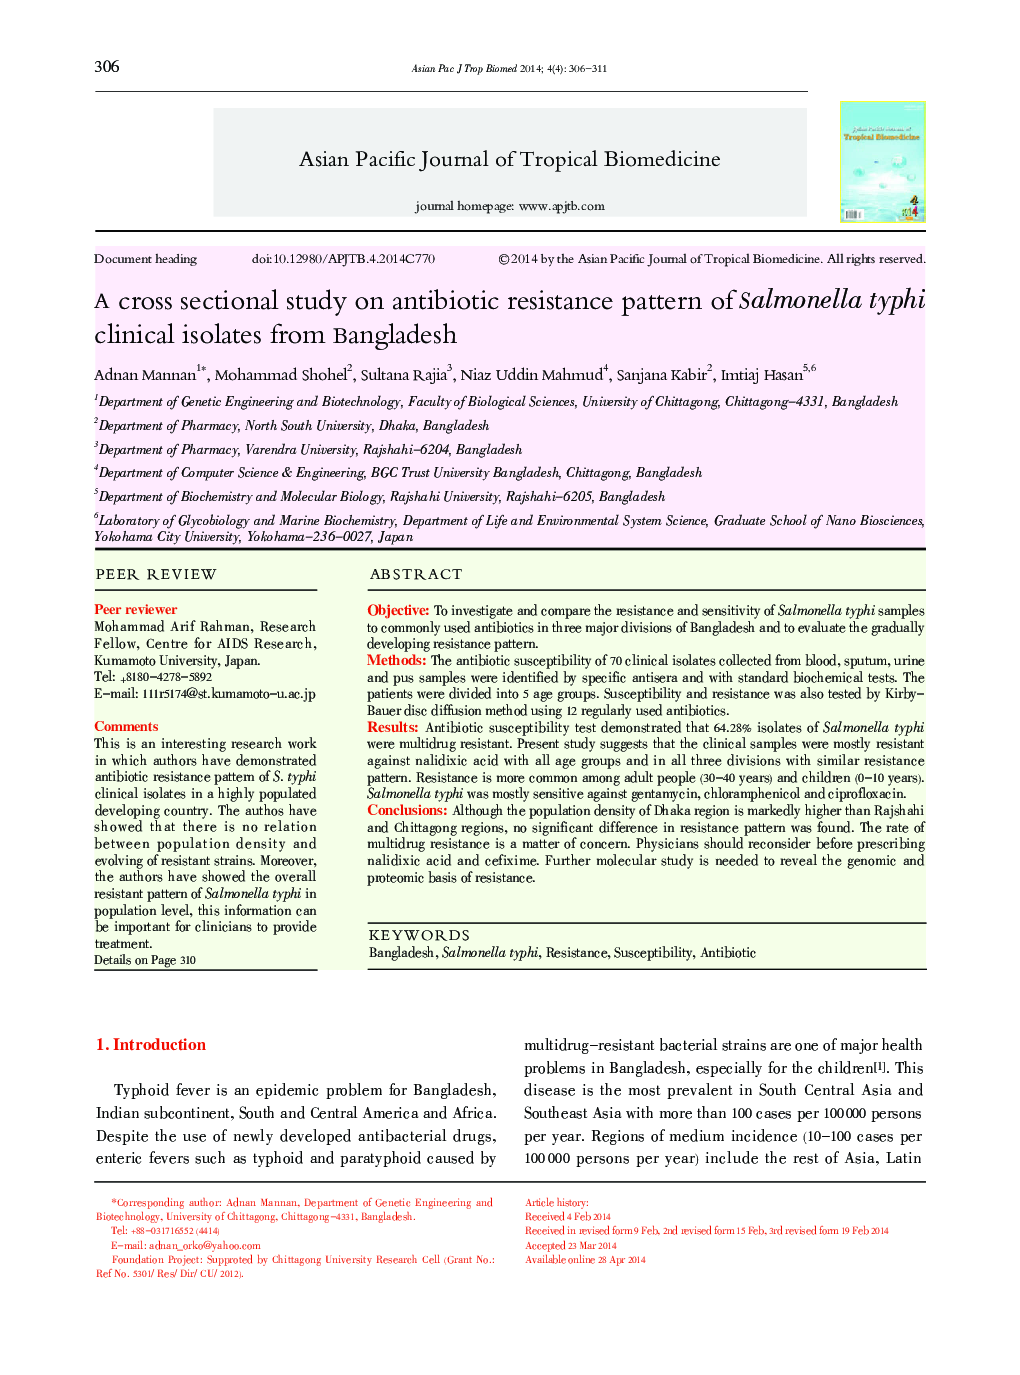 مطالعه مقطعی بر روی الگوی مقاومت آنتی بیوتیک جدایه های بالینی سالمونلا تیفی از بنگلادش 